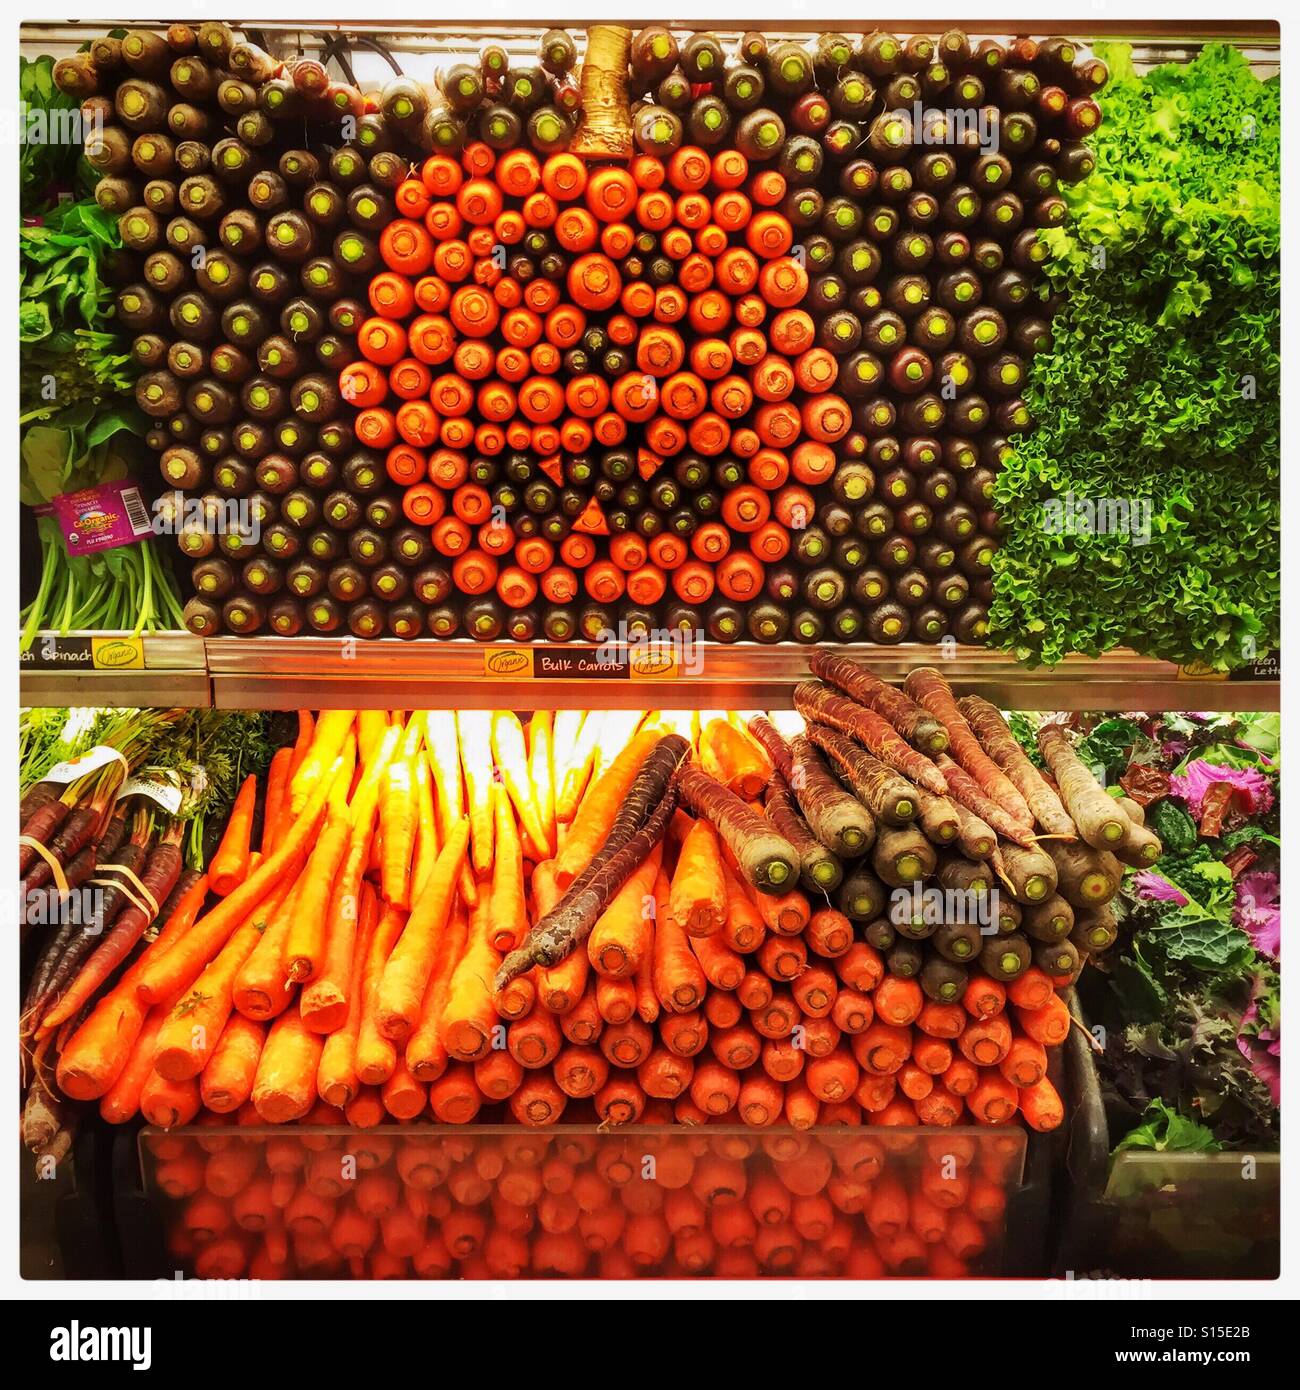 Les couleurs de l'image dans la production de carottes dans un ministère avec jack-o-lantern design en octobre. Banque D'Images